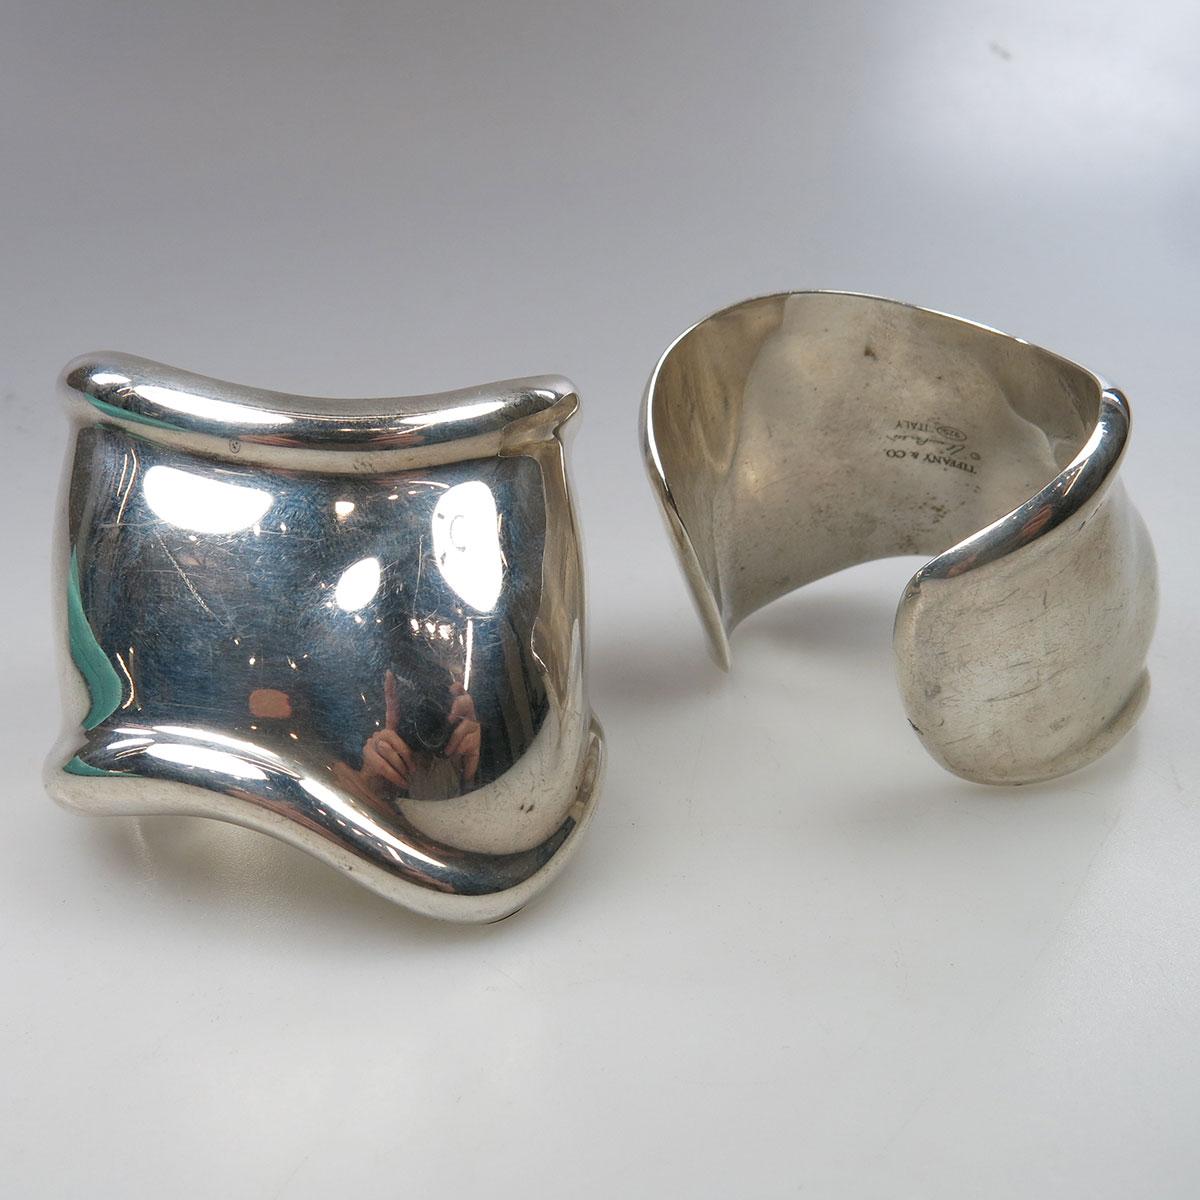 Pair (Left & Right) Of Tiffany & Co. Elsa Peretti Italian Sterling Silver “Bone” Open Cuff Bangles